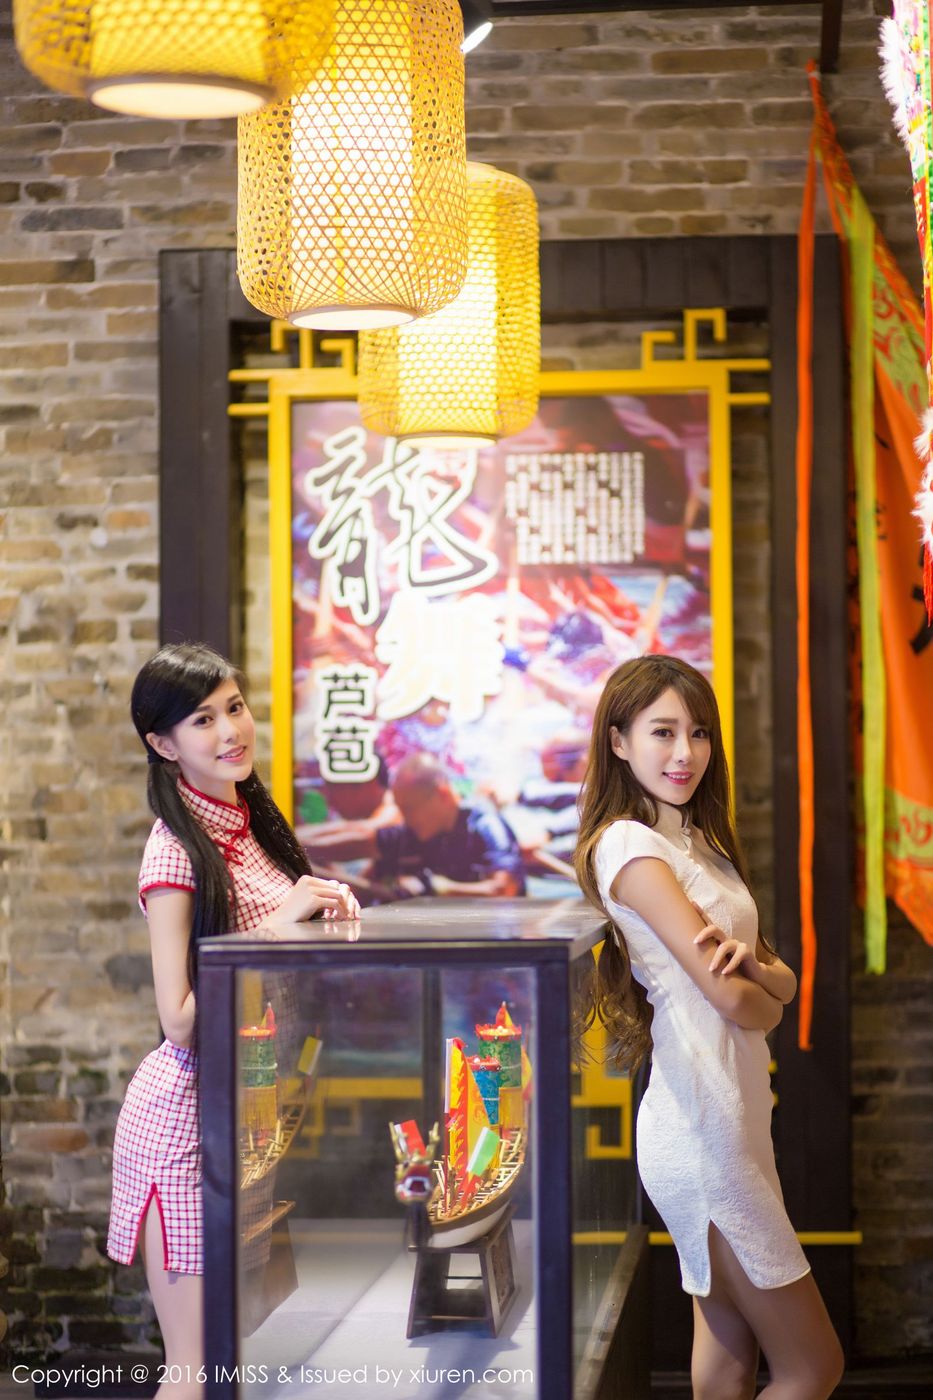 IMiss爱蜜社姐妹花王曼妮&谭小雅身着旗袍街拍小清新写真